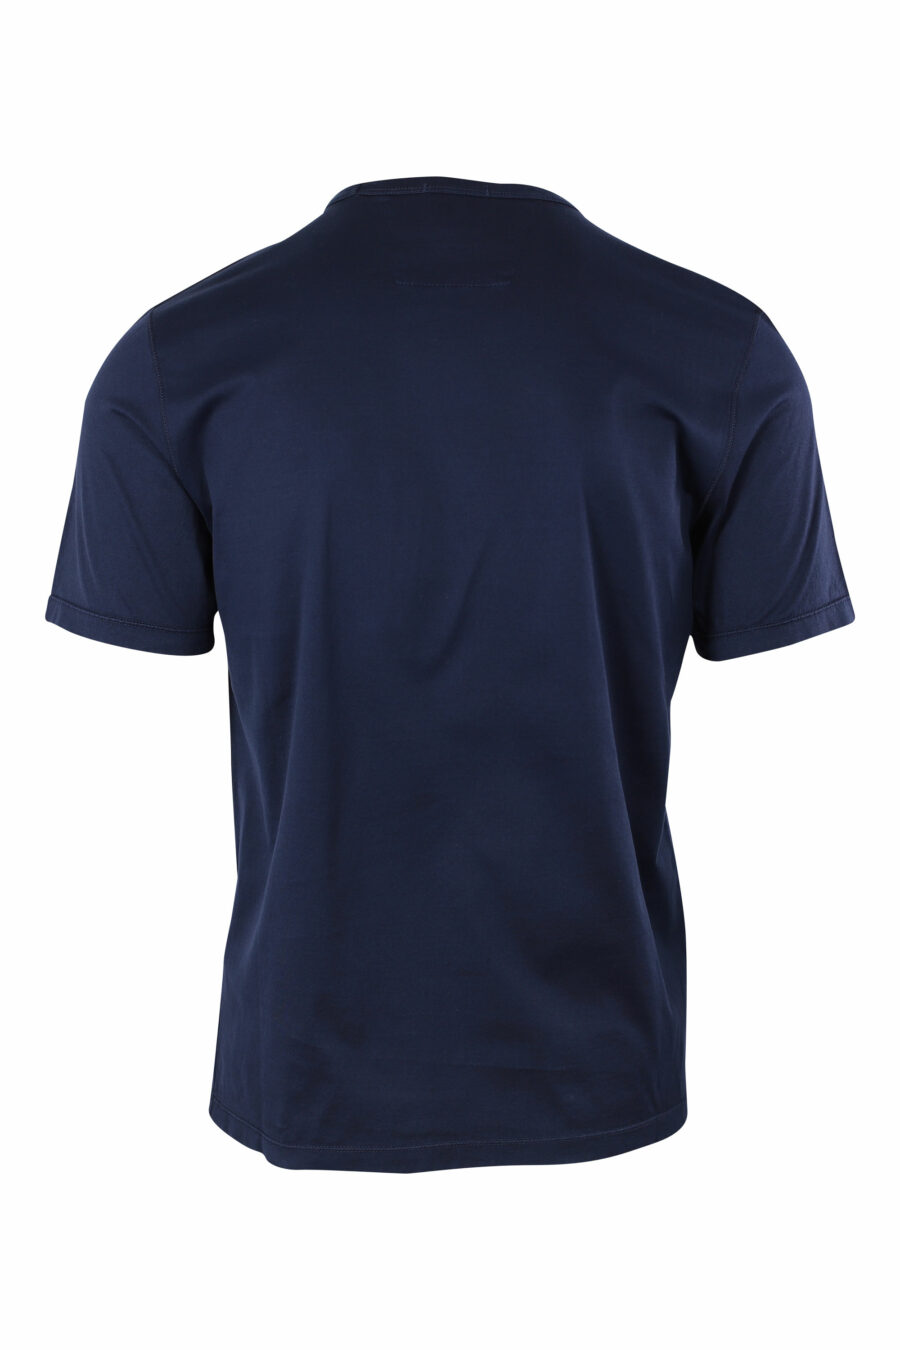 Camiseta azul oscuro con minilogo parche - IMG 9650